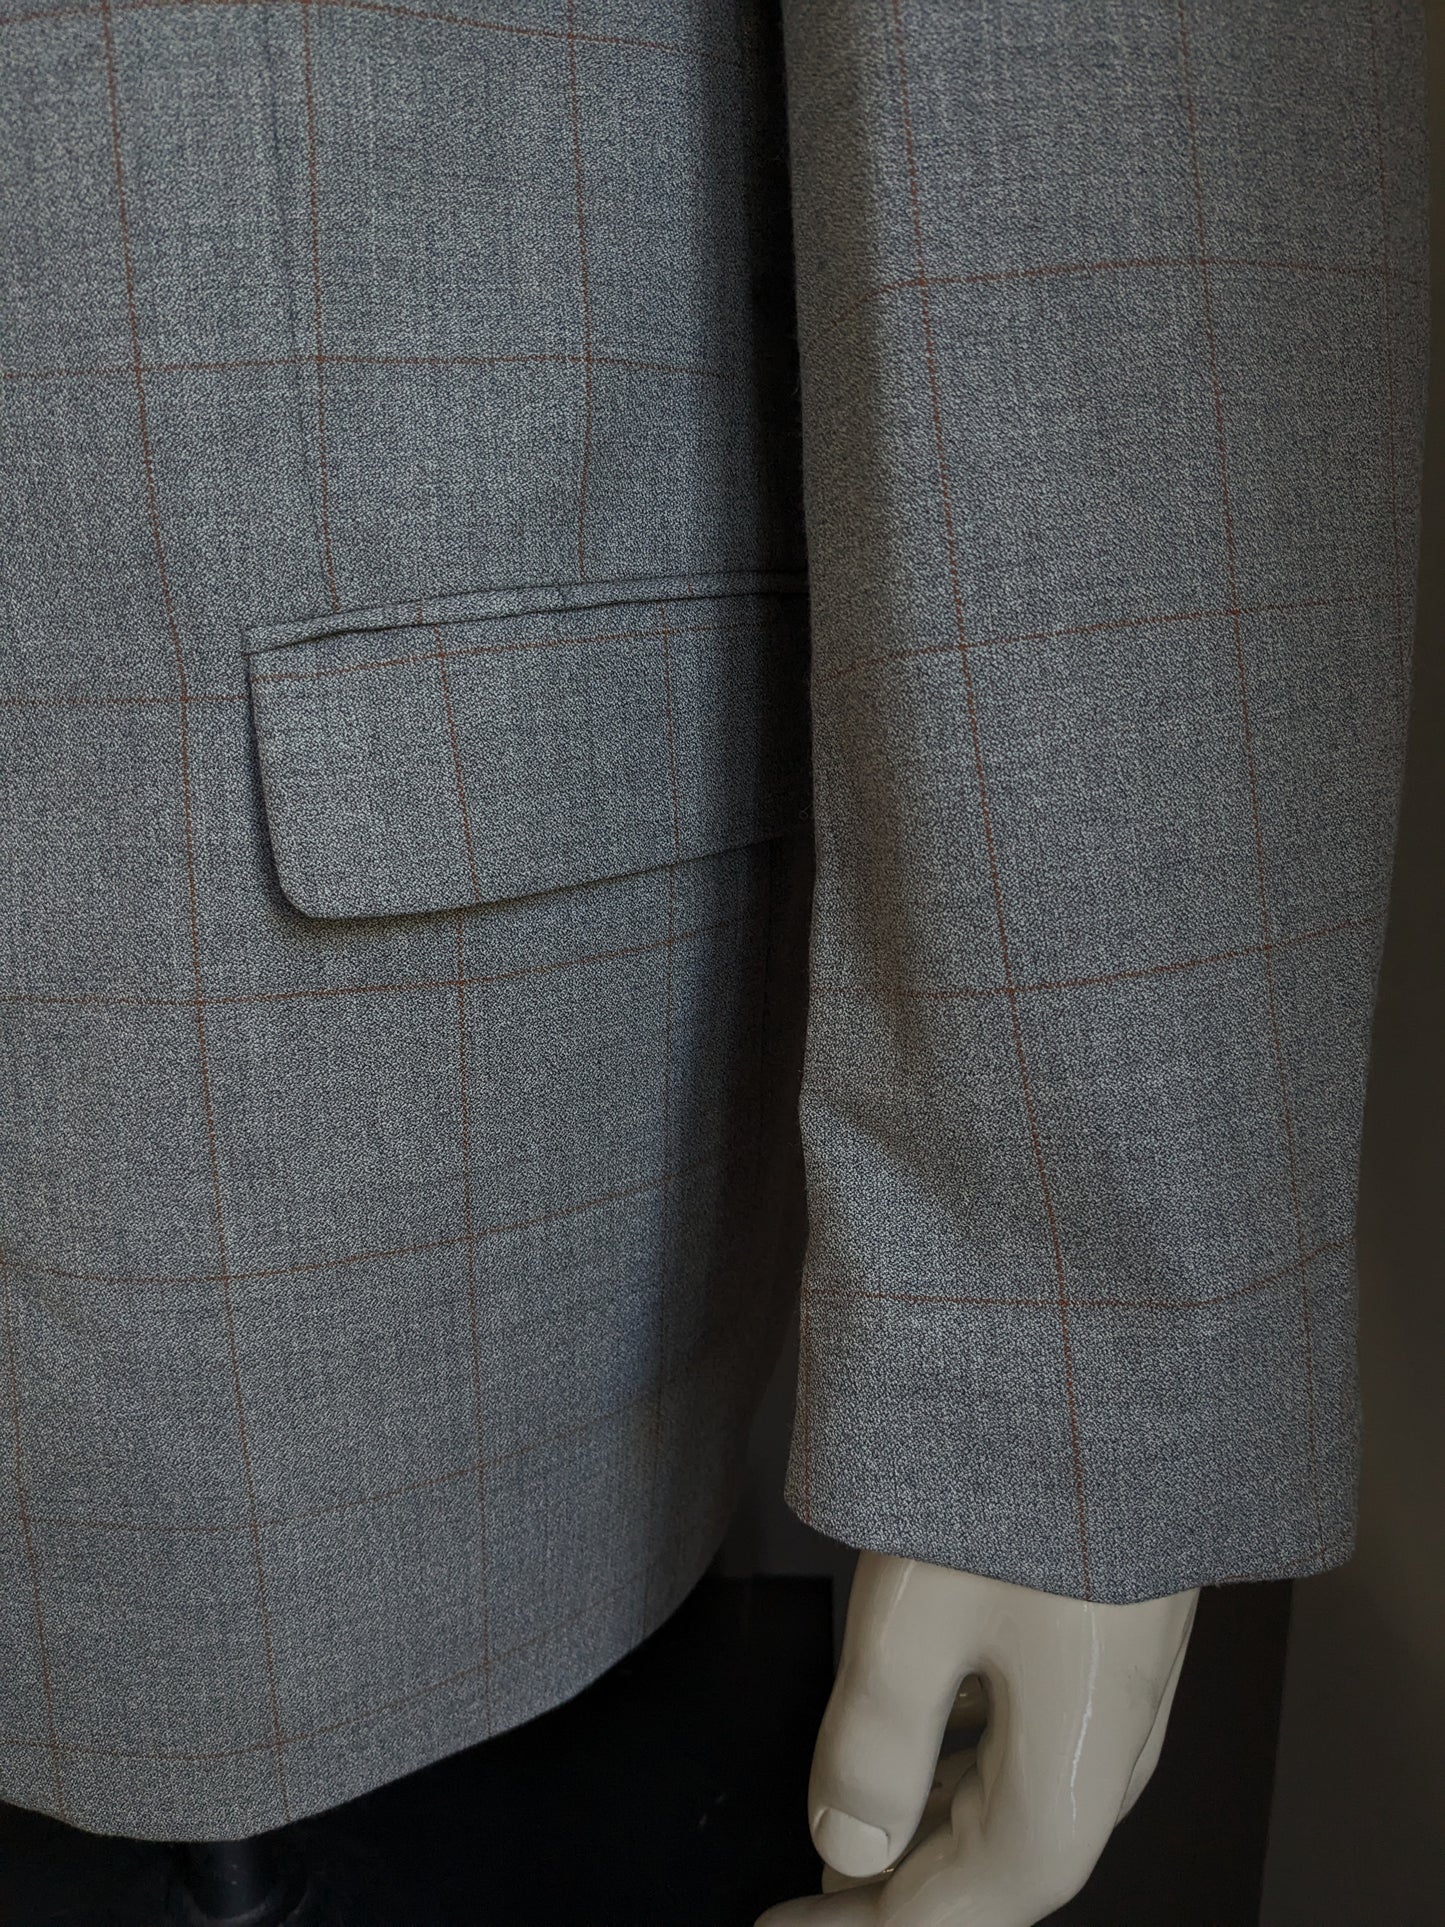 Giacca vintage in lana Bartlett & Walker. Brown grigio controllato. Dimensione 52 / L.